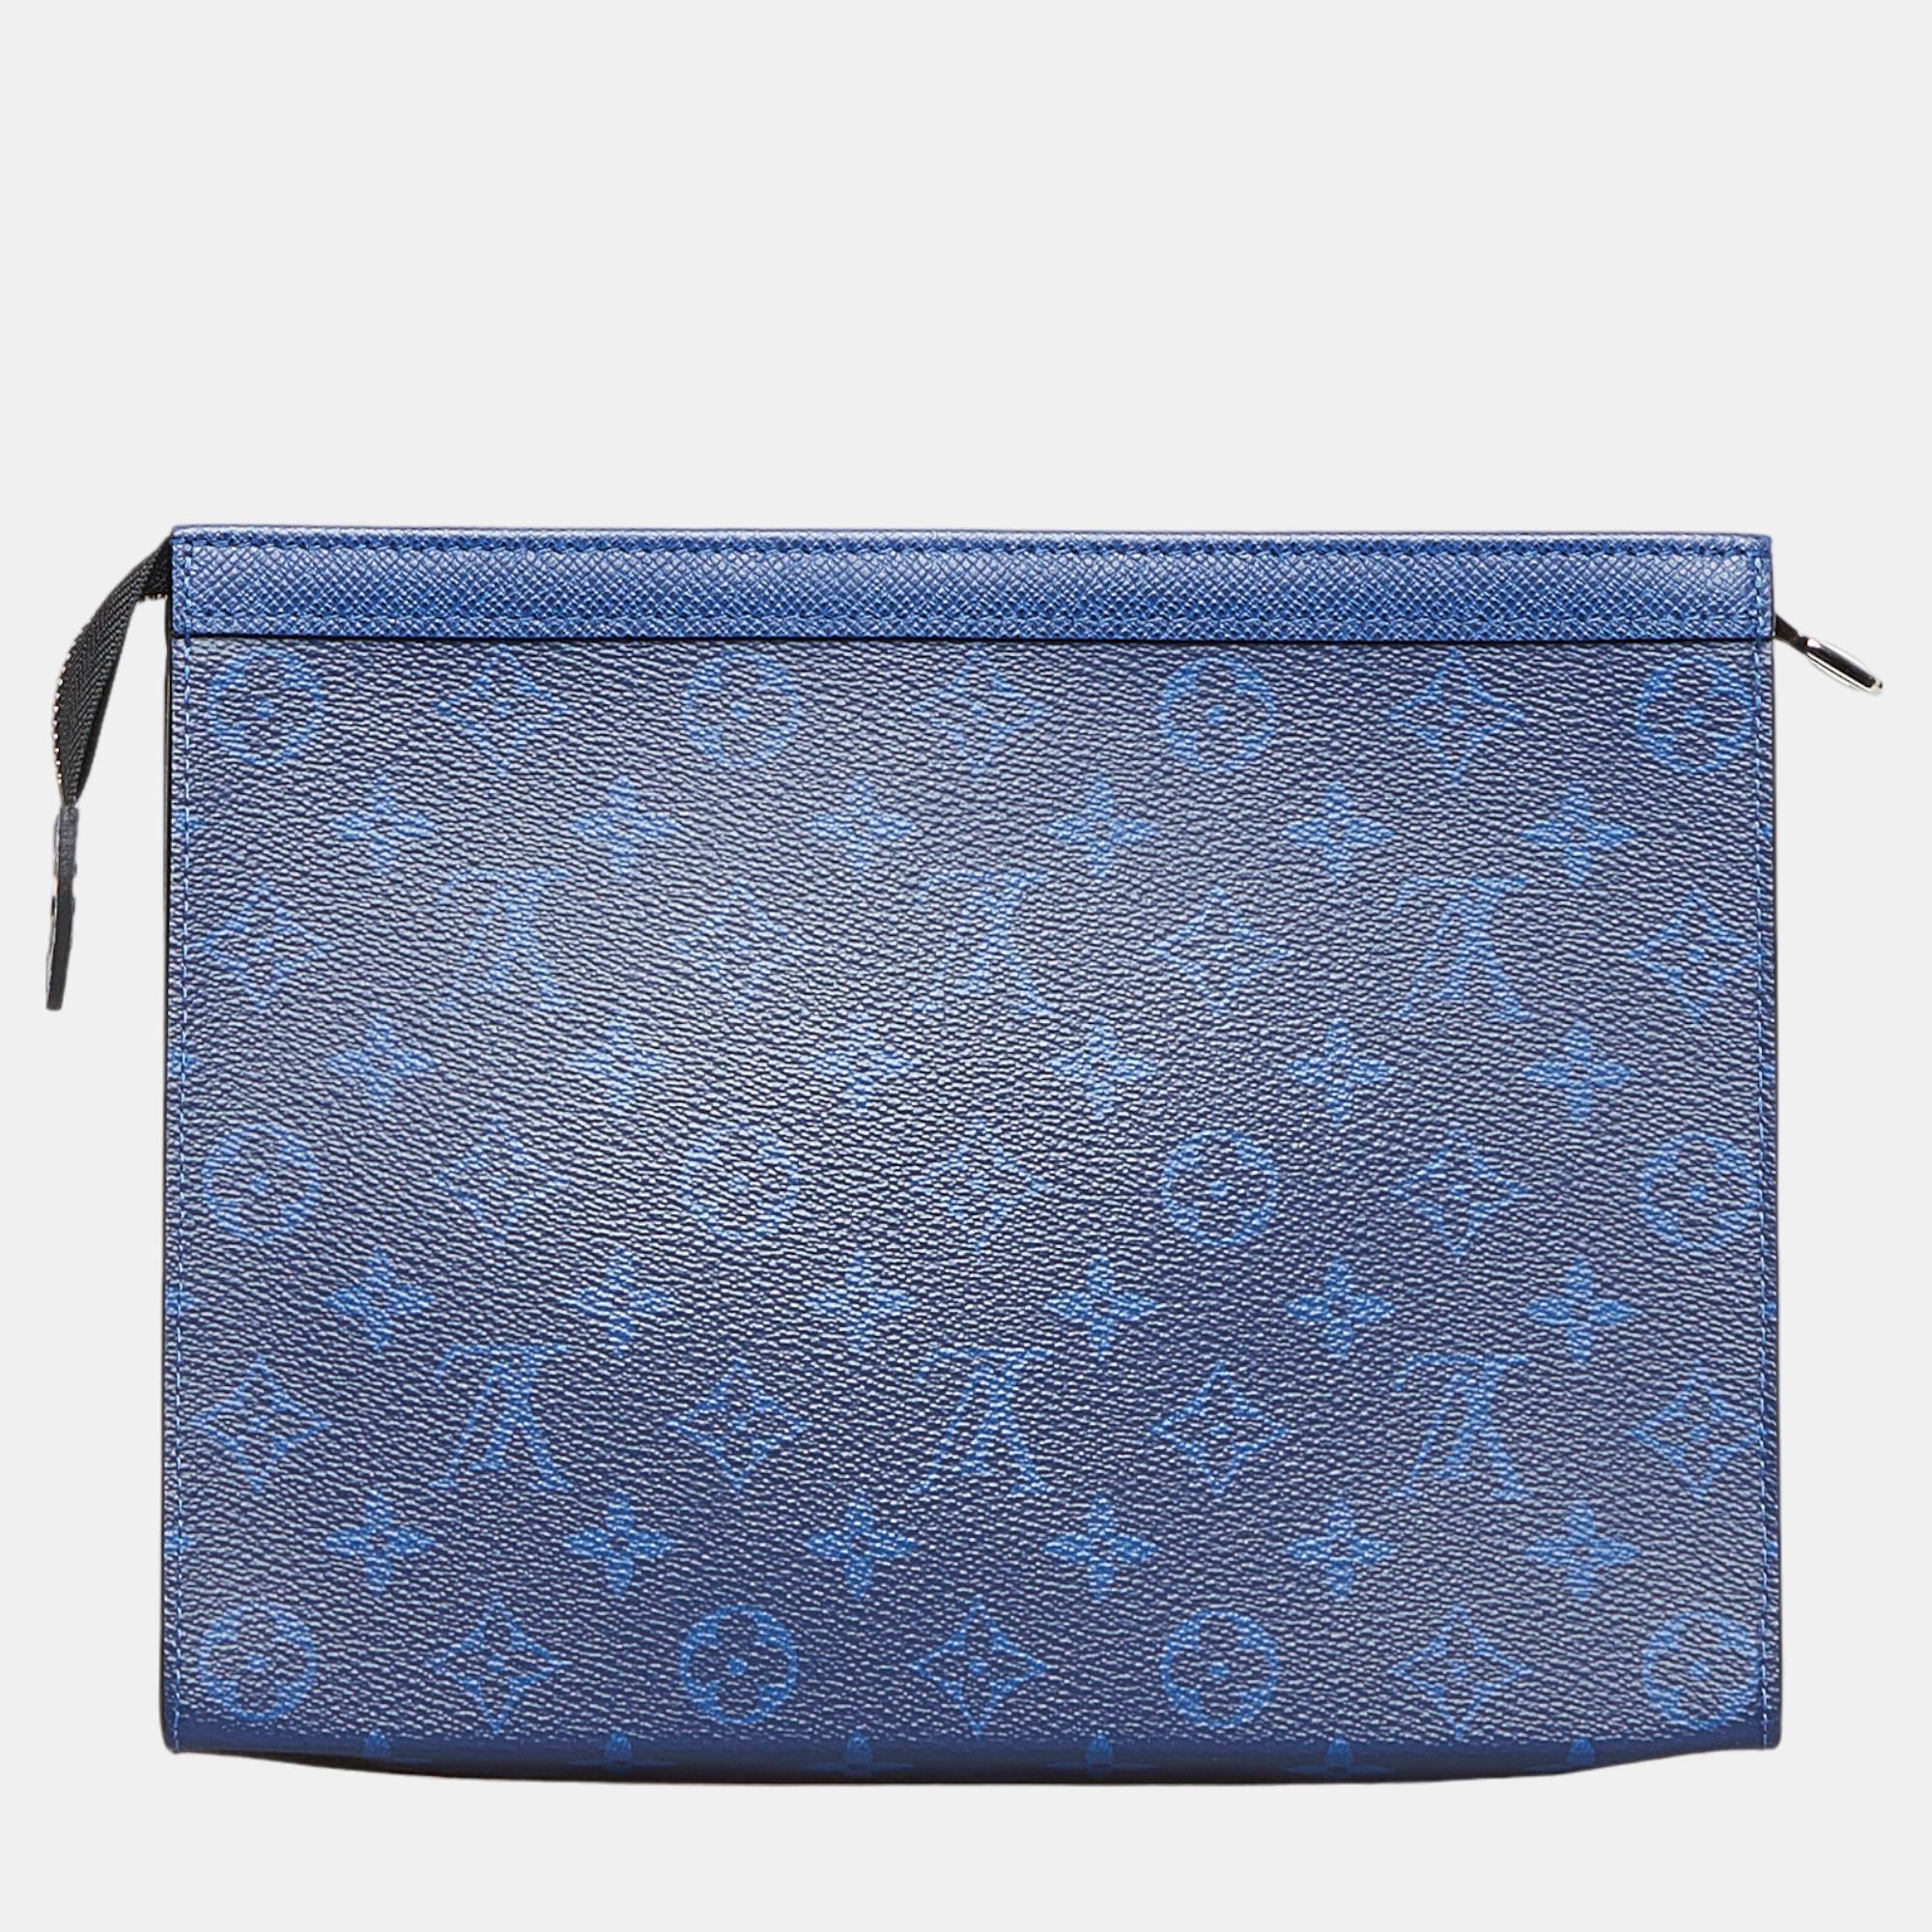 Louis Vuitton Blue Monogram Taigarama Pochette Voyage MM